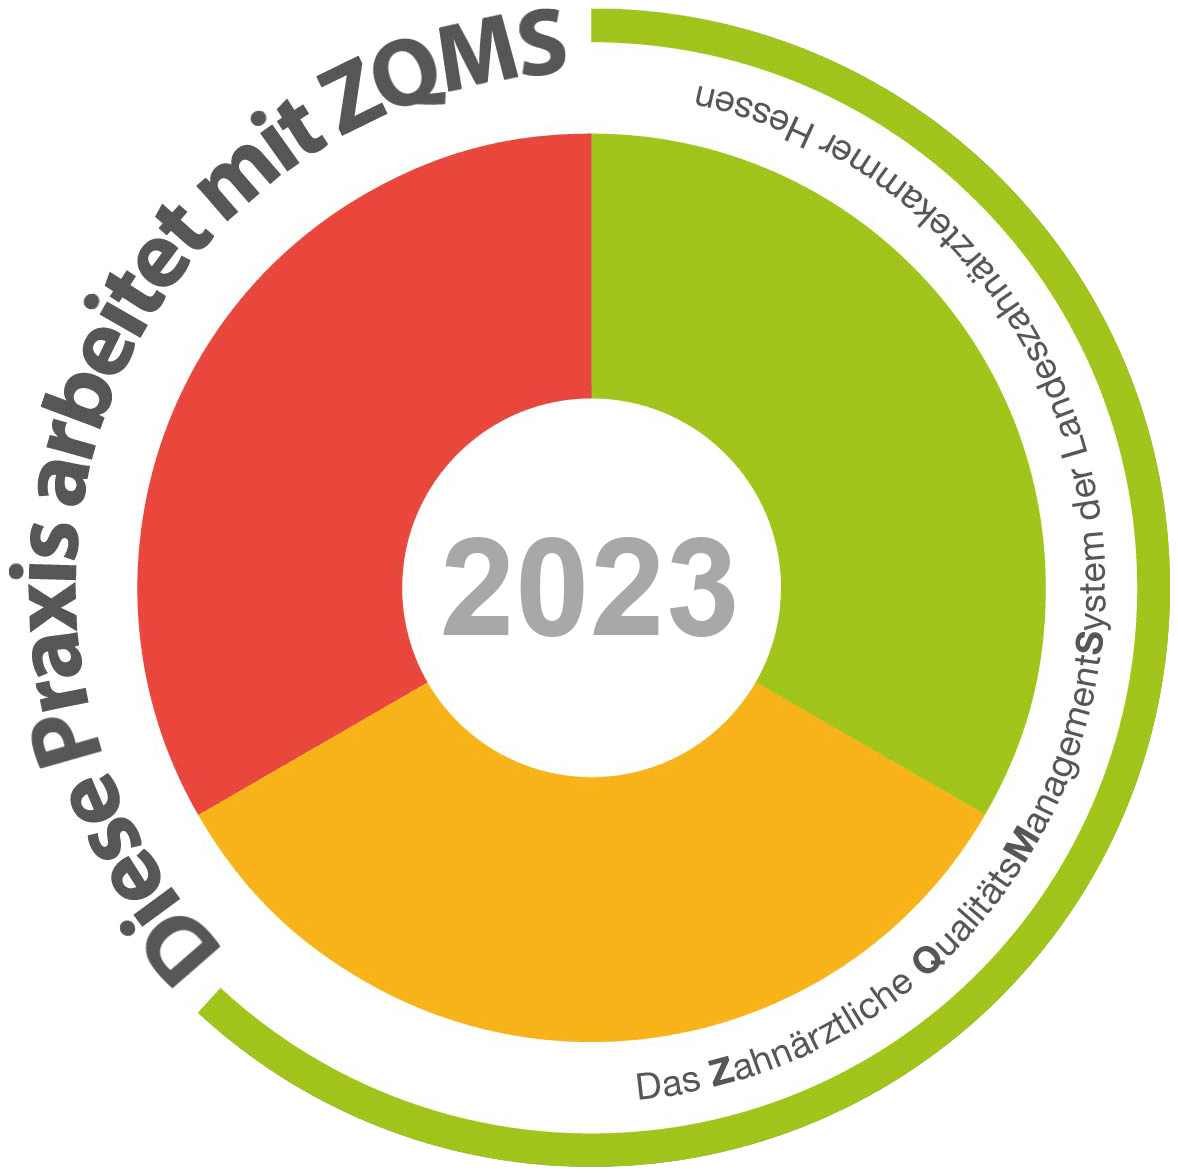 Die Kieferorthopädische Praxis Champ KFO arbeitet nach dem ZQMS Standard 2022